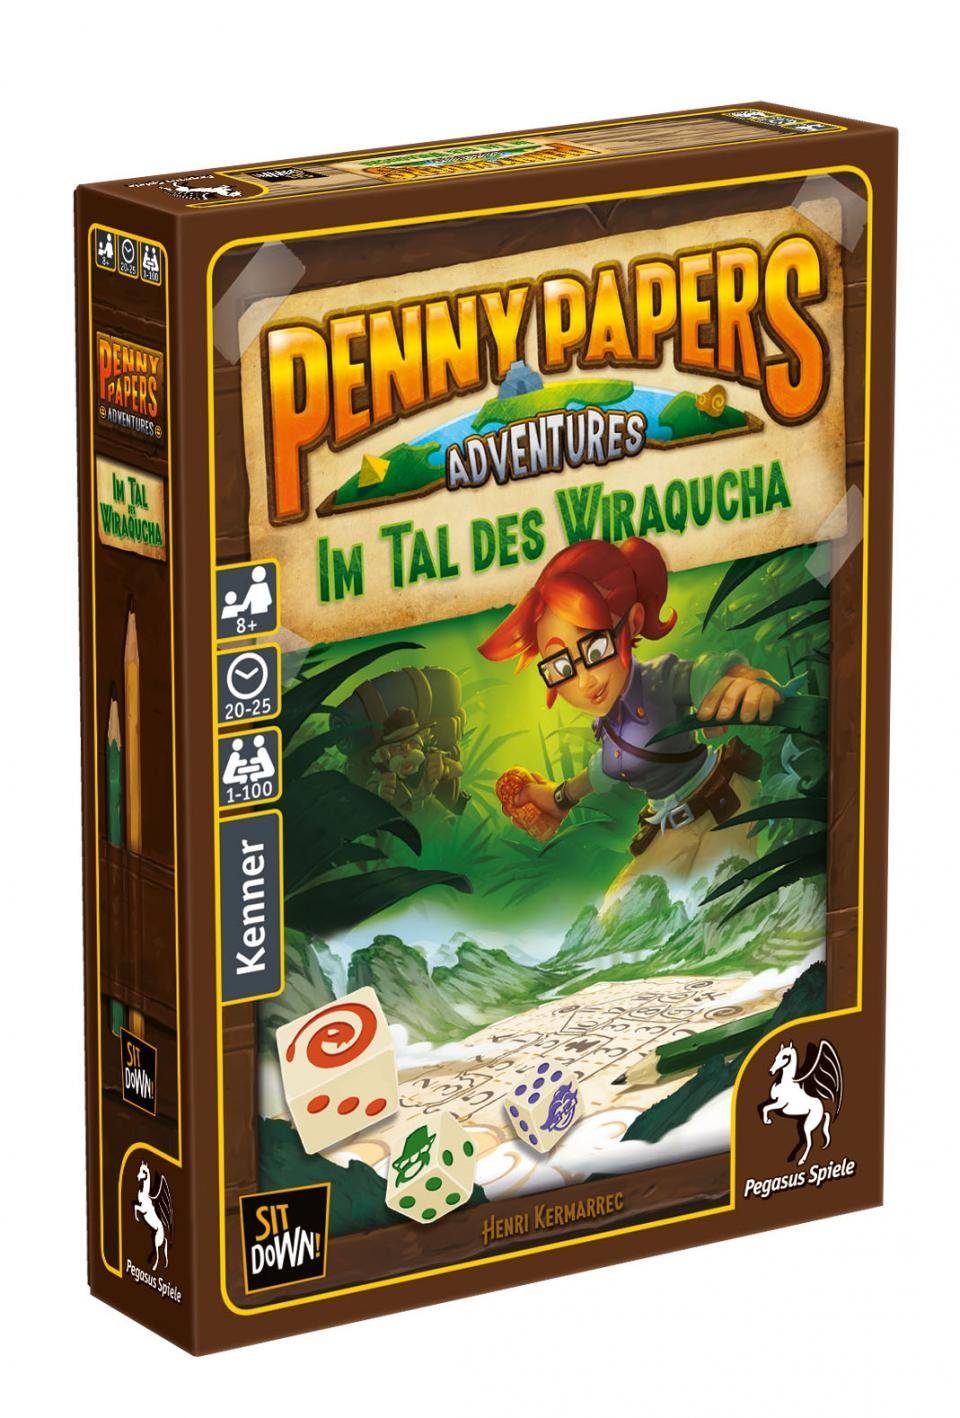 [Höchste Qualität haben!] Pegasus Spiel, Penny Papers Im Wiraqucha - Tal des Adventures